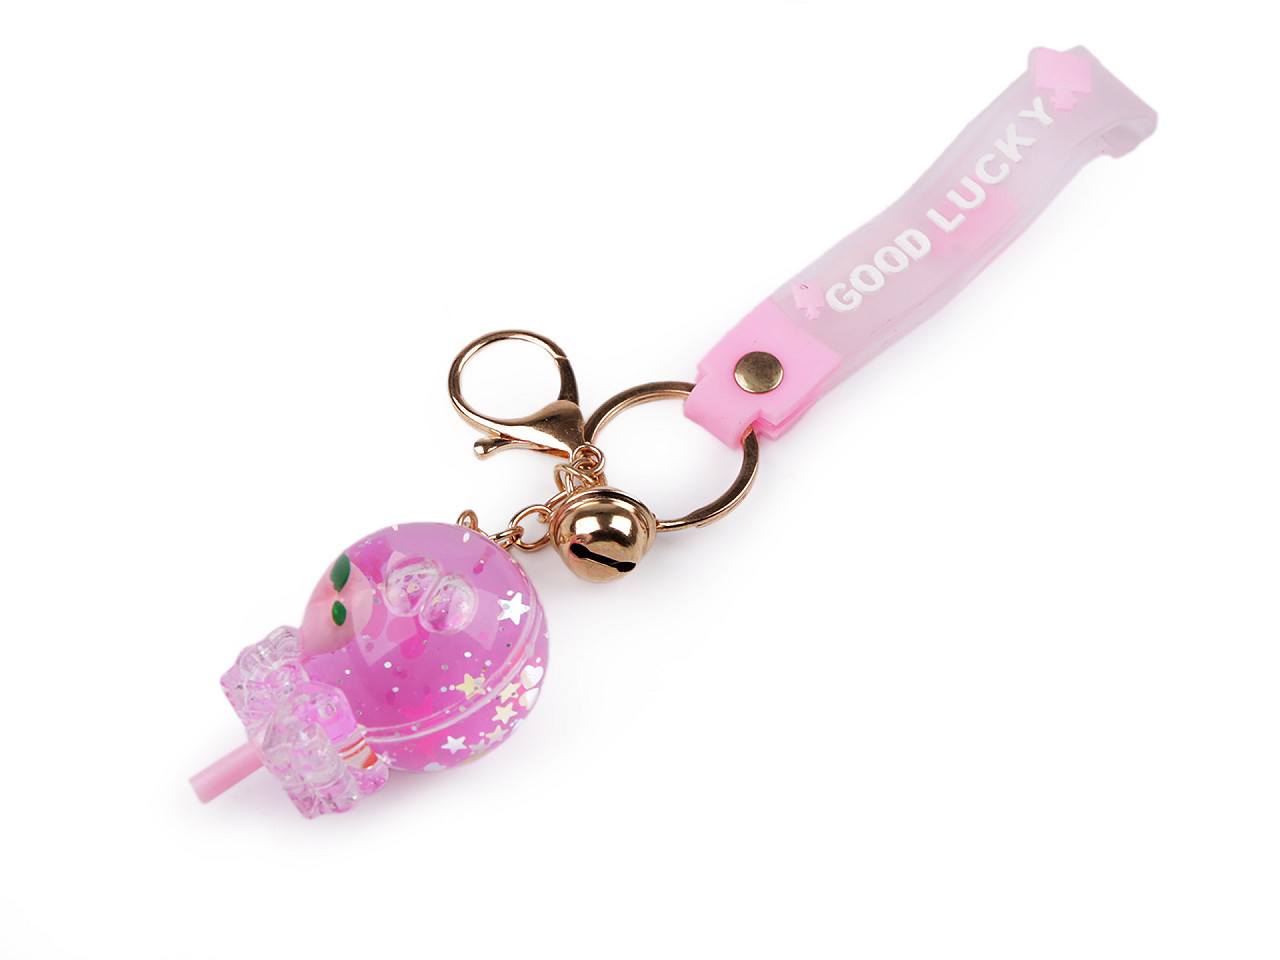 Přívěsek na batoh / klíče s tekutinou a glitry, barva 1 růžová sv. lízátko